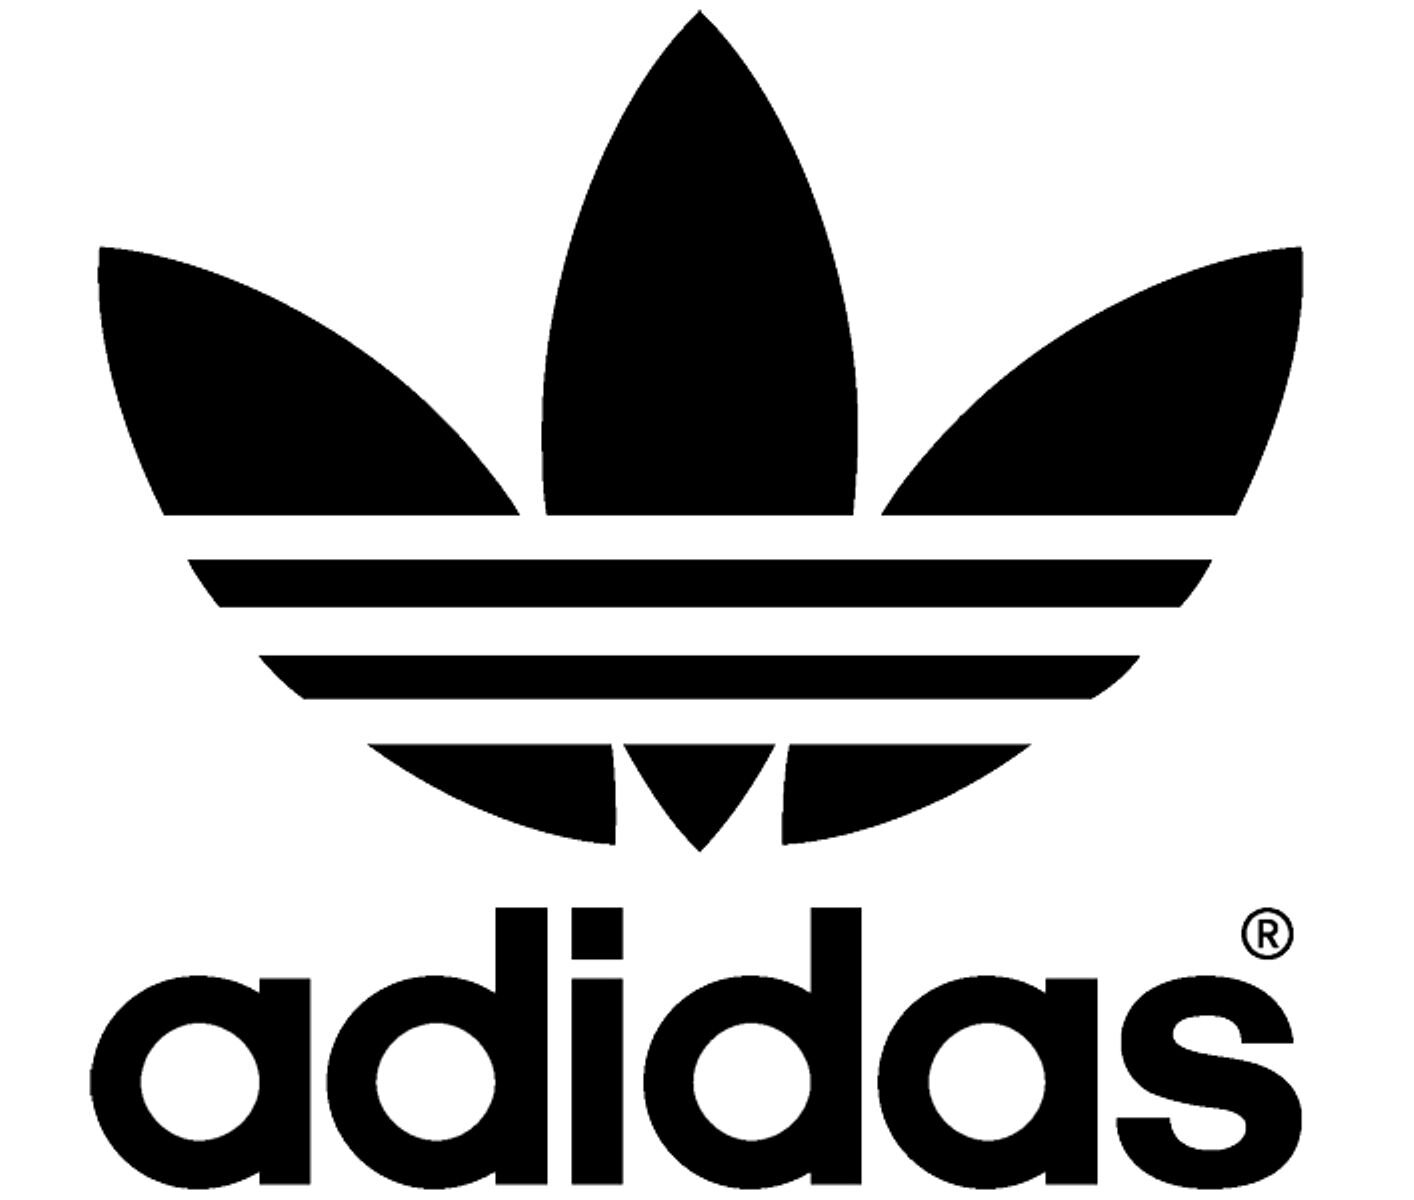 Adidas.jpg